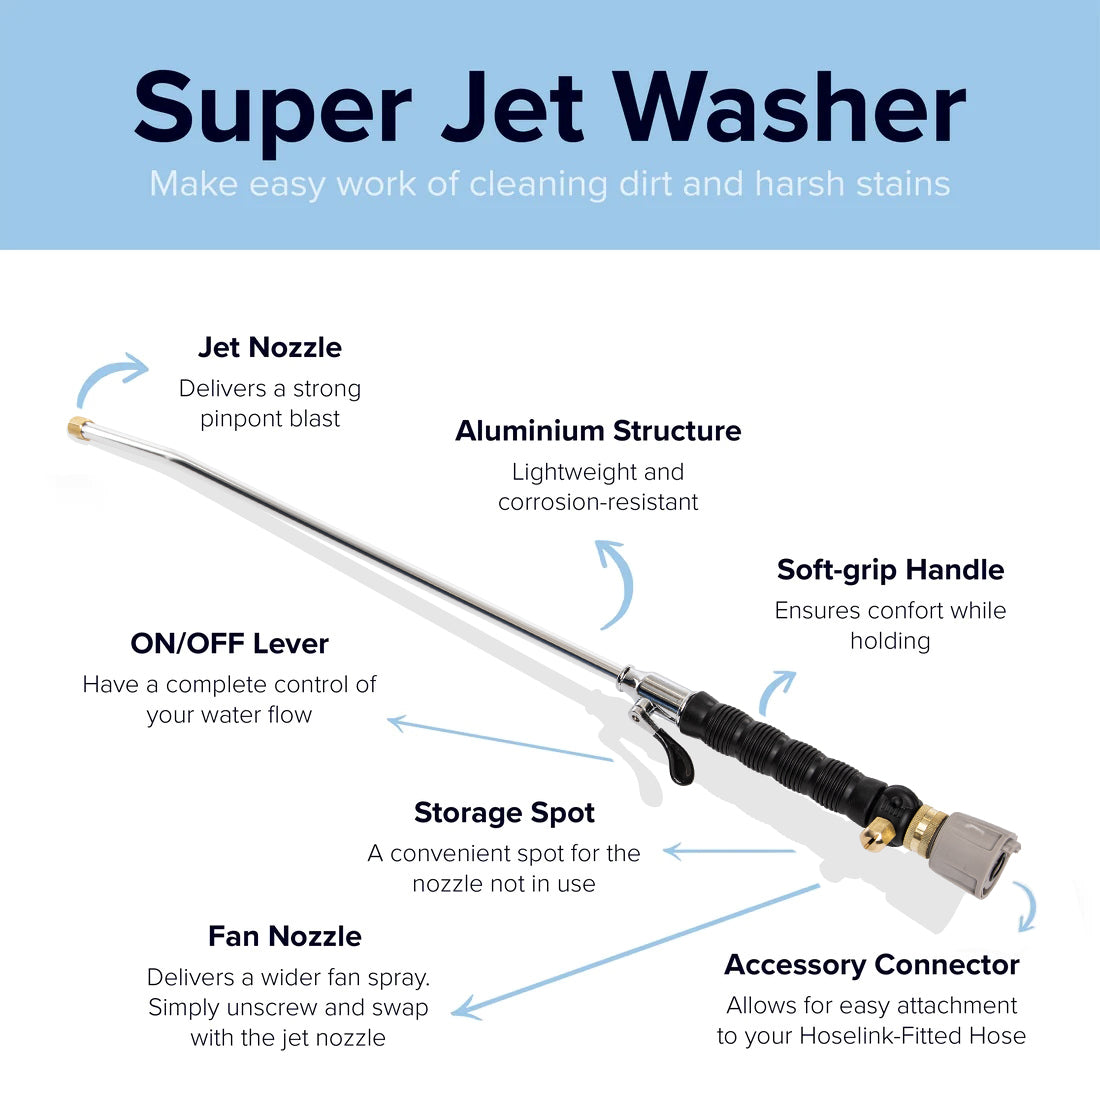 Super Jet Washer